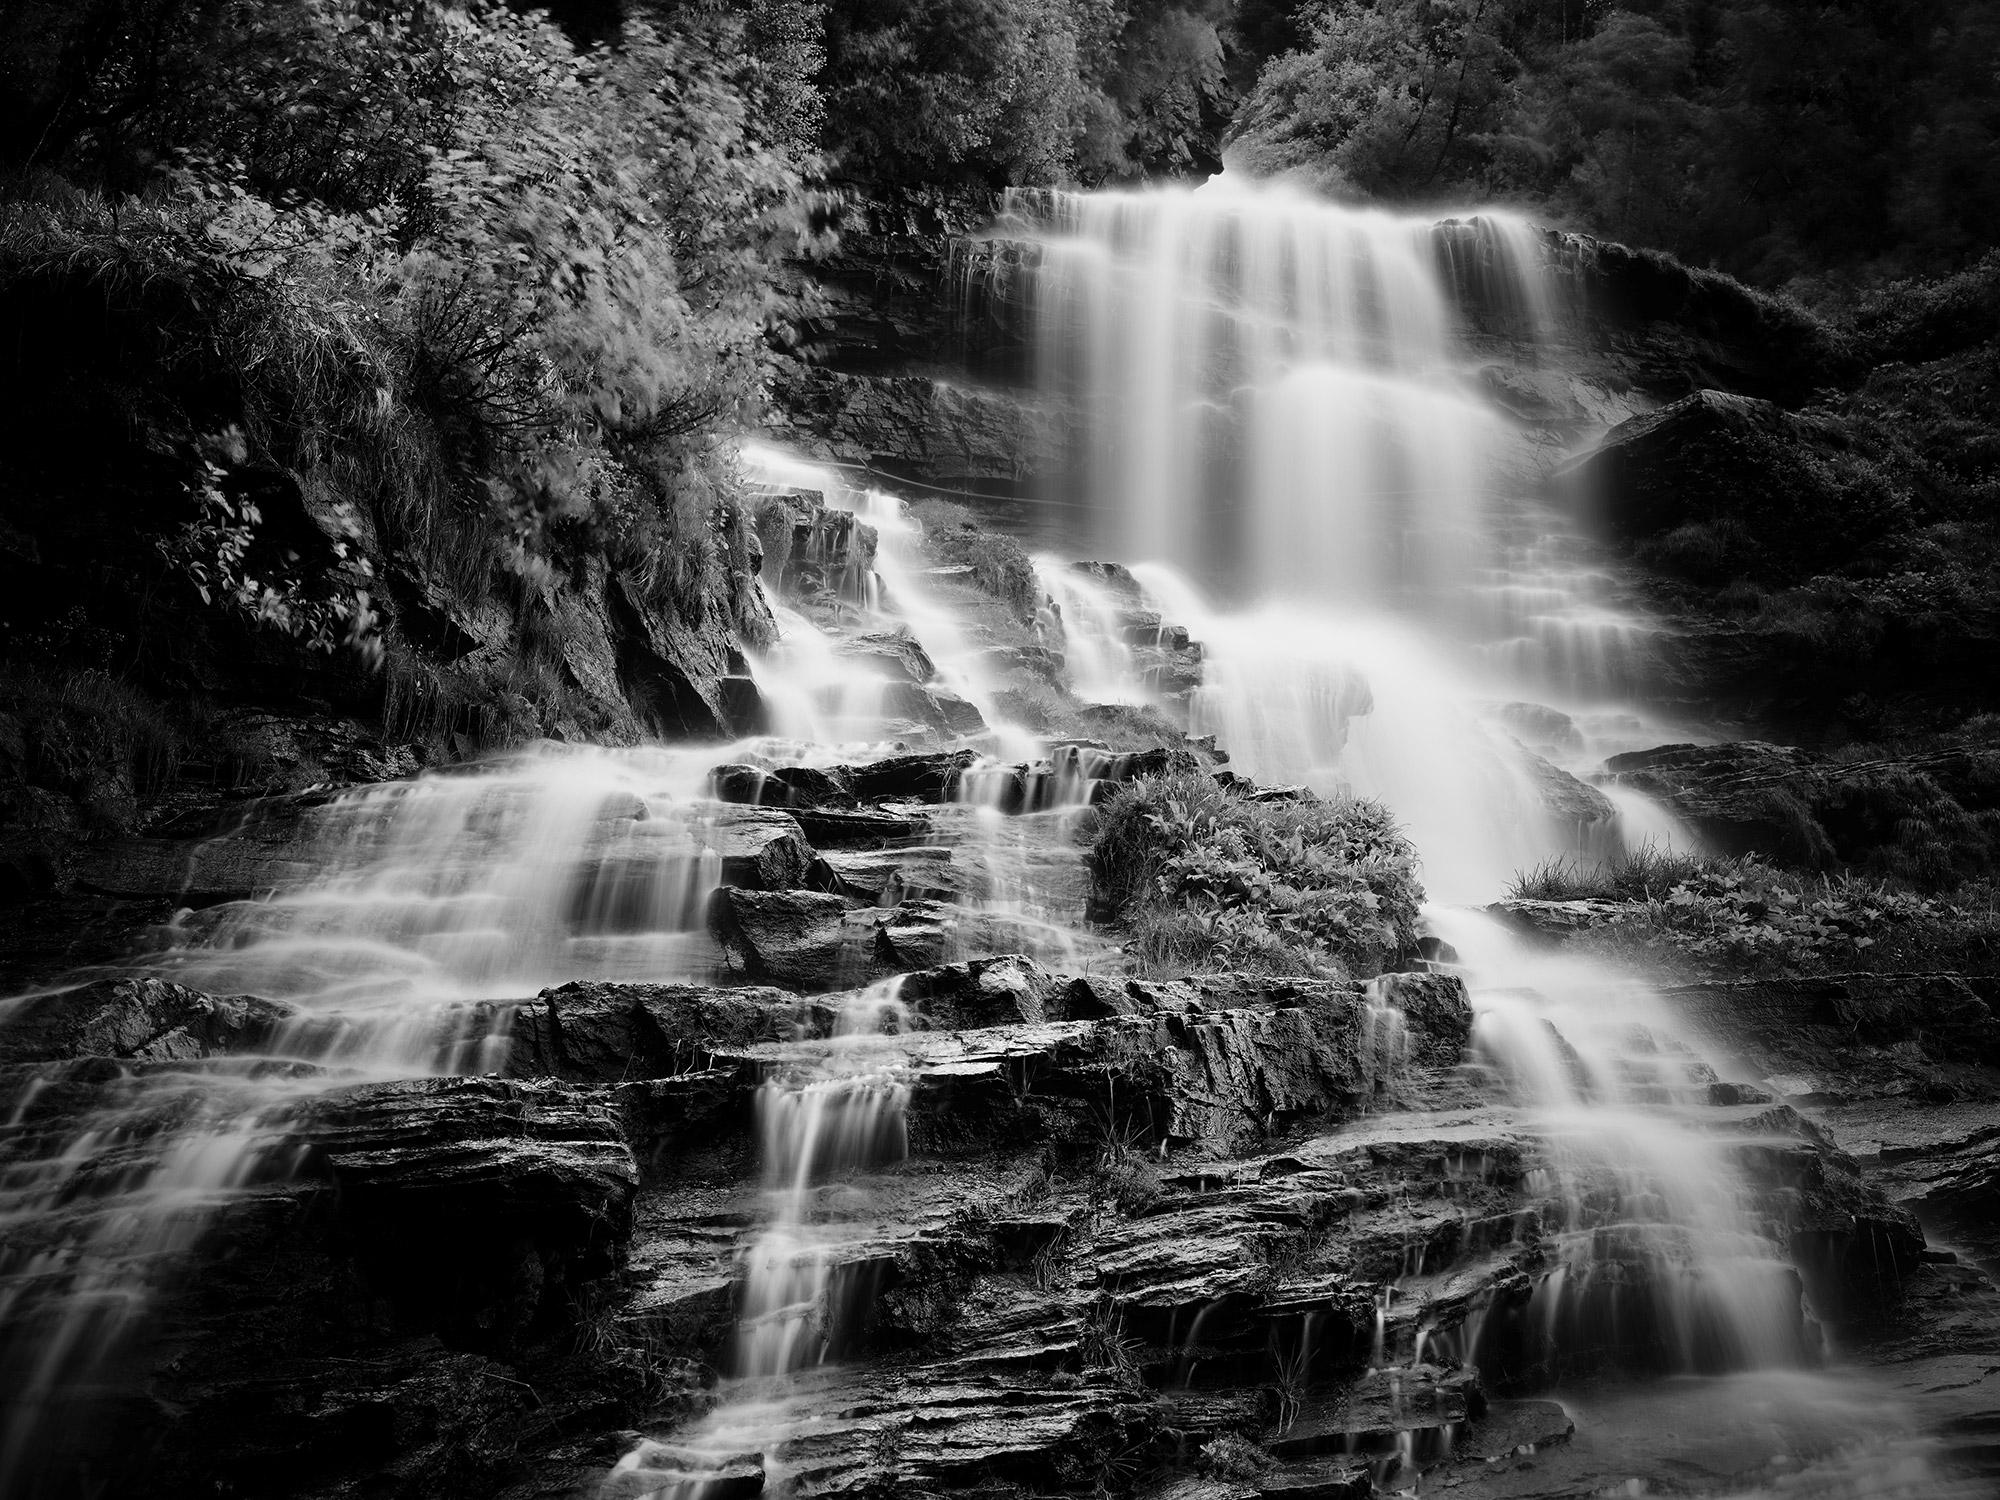 Klockelefall, chute d'eau, ruisseau de montagne, photographie en noir et blanc, paysage